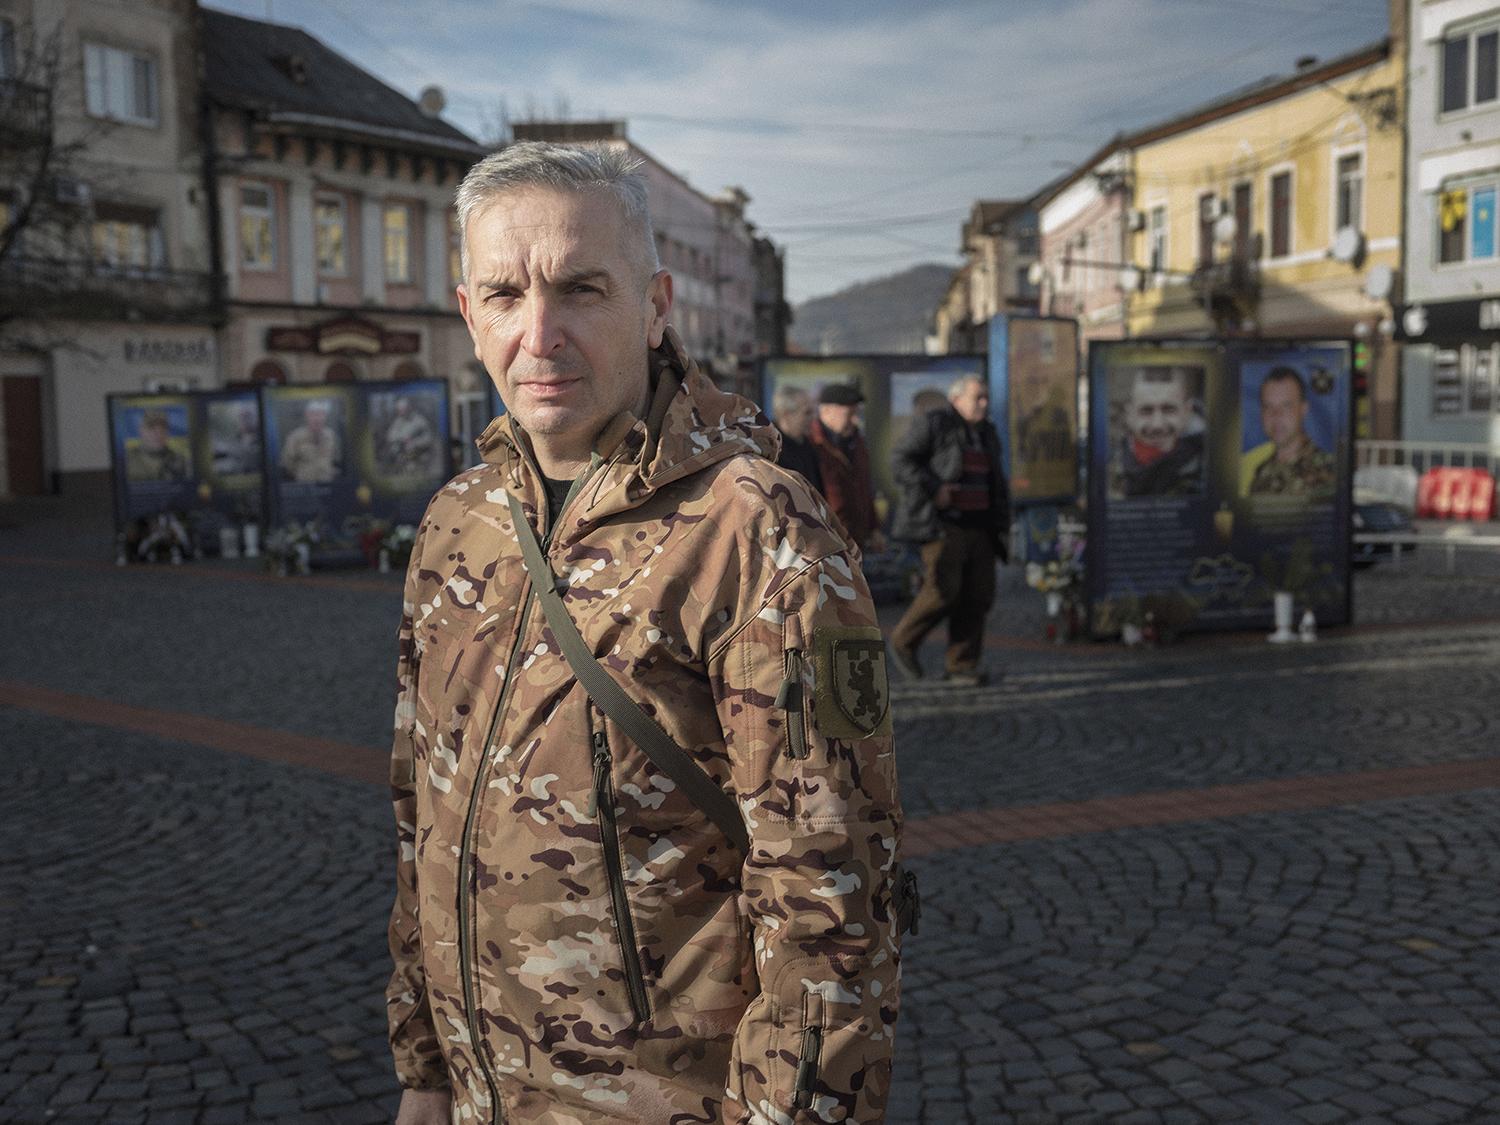 Seržant Bohdan počas krátkej dovolenky na hlavnom námestí Mukačeva pred fotografiami jeho padlých spolubojovníkov zo Zakarpatského bataliónu.